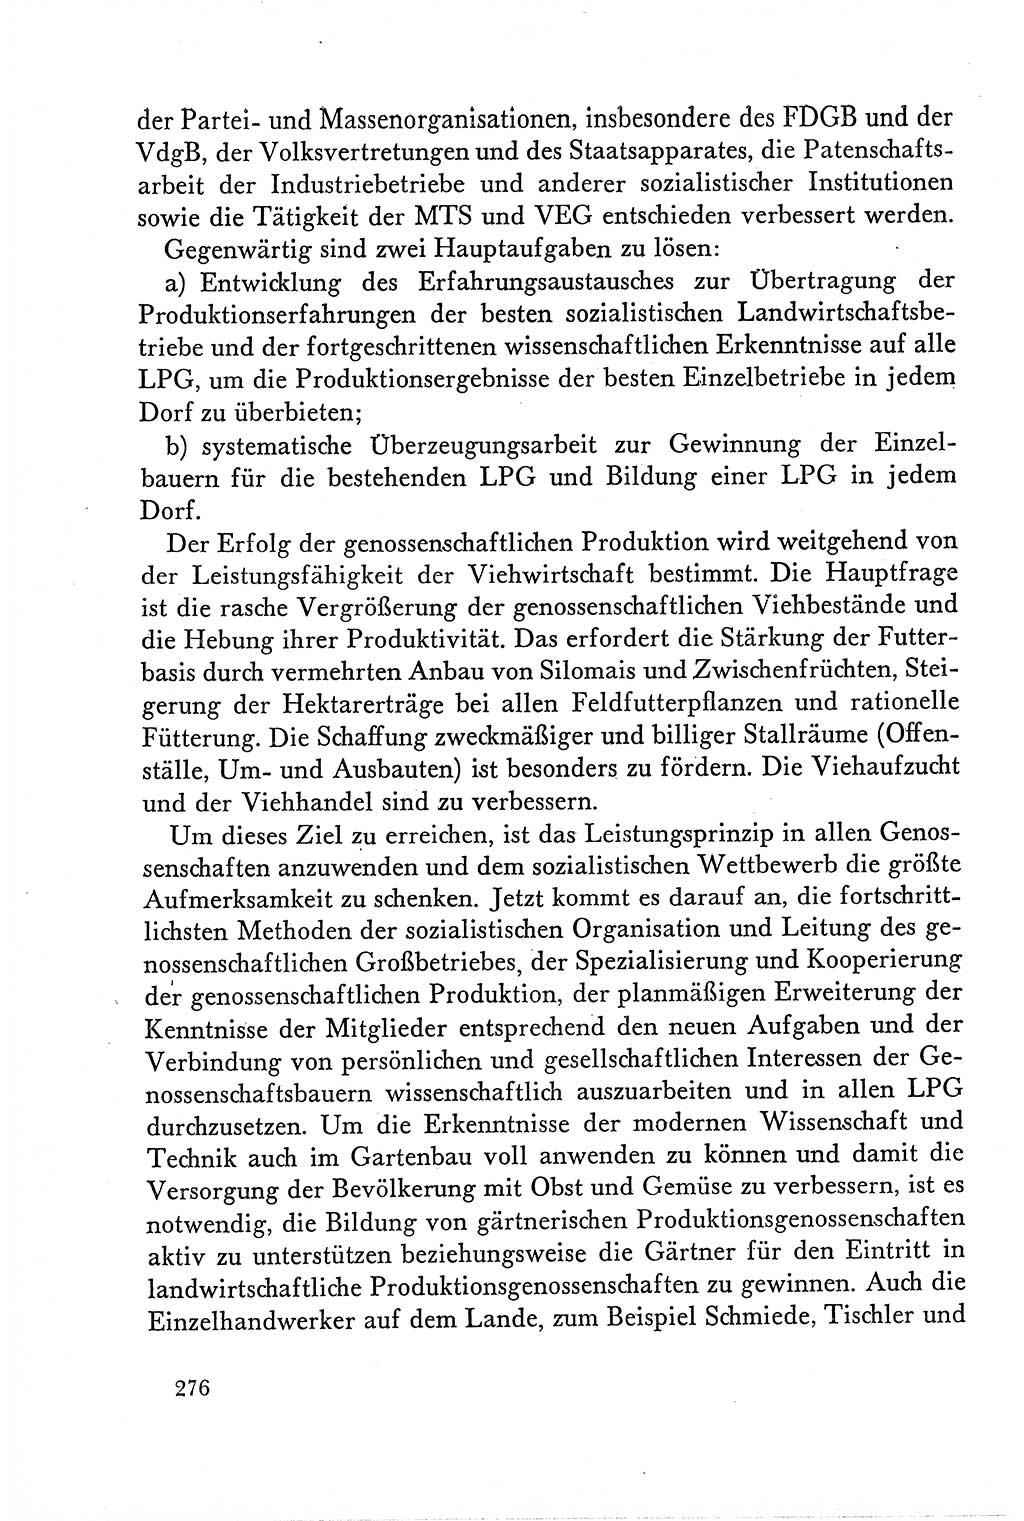 Dokumente der Sozialistischen Einheitspartei Deutschlands (SED) [Deutsche Demokratische Republik (DDR)] 1958-1959, Seite 276 (Dok. SED DDR 1958-1959, S. 276)